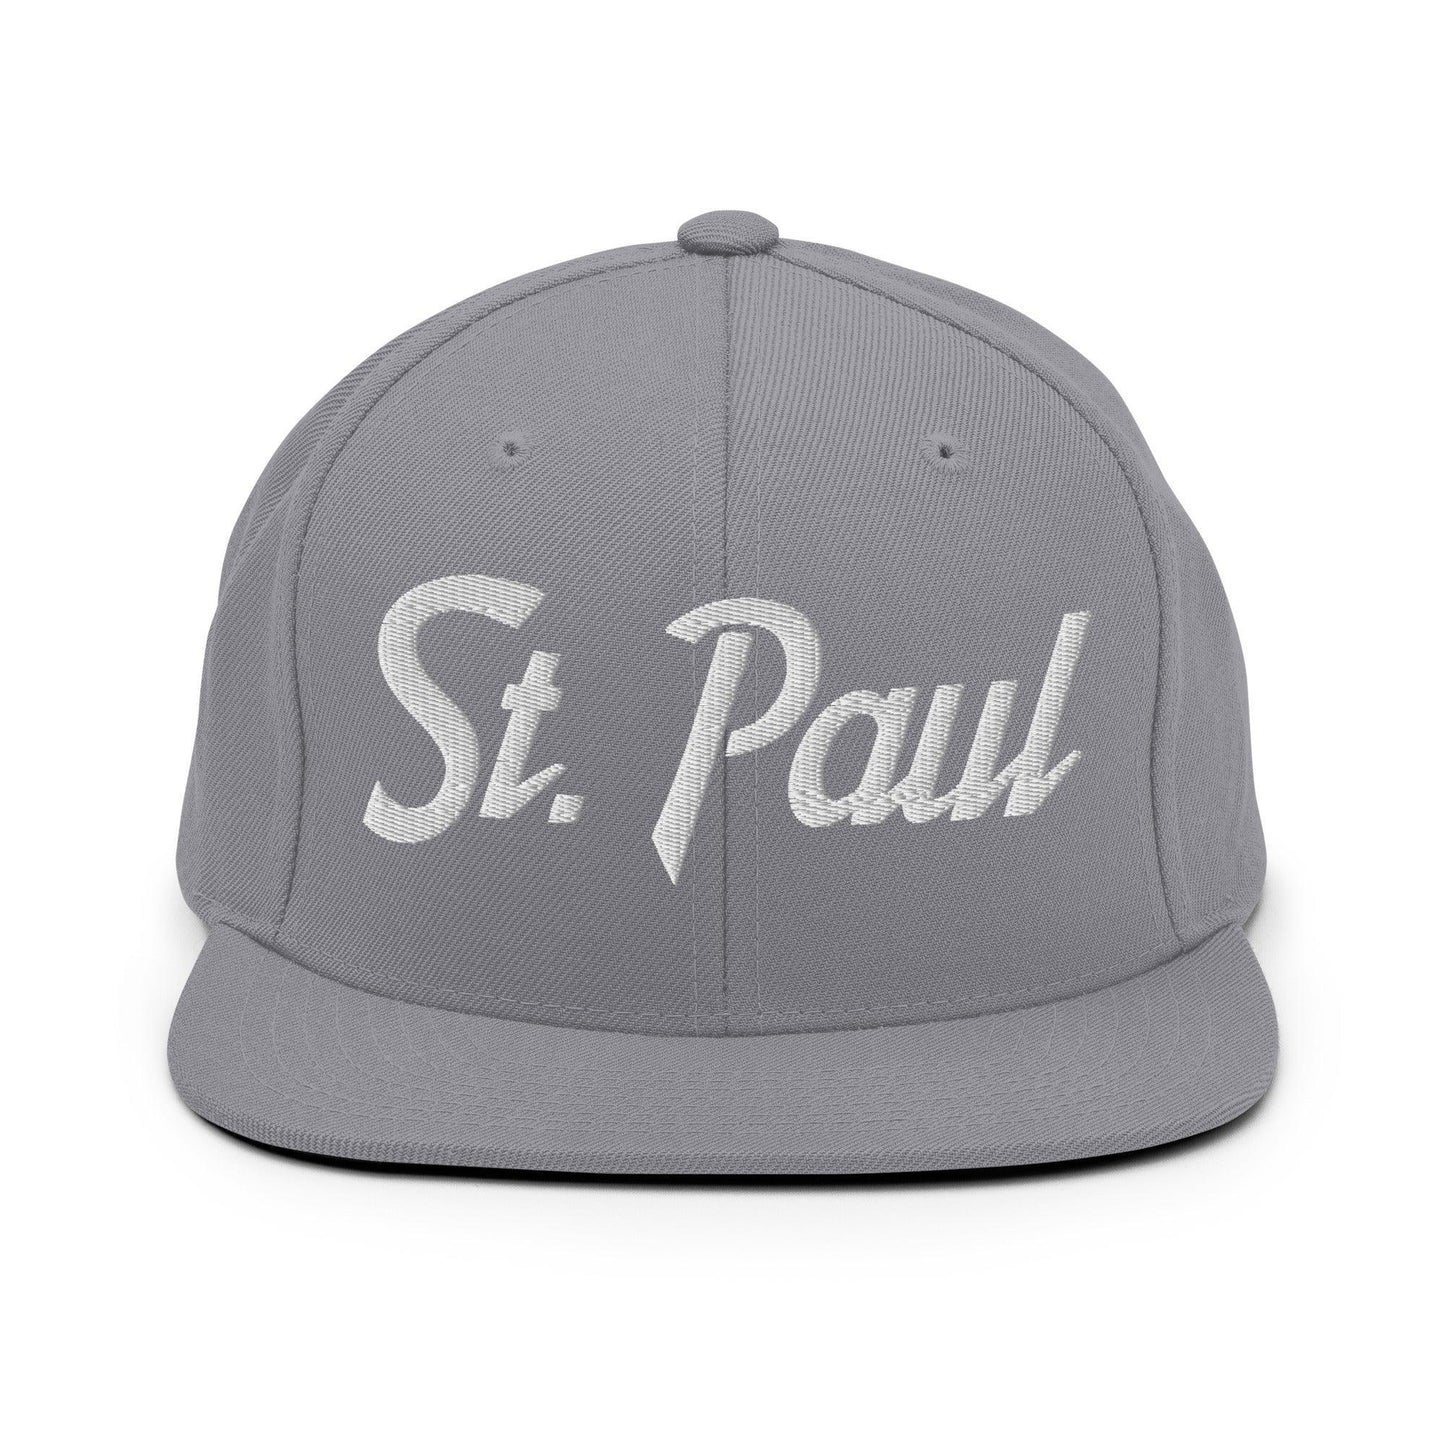 St. Paul Script Snapback Hat Silver